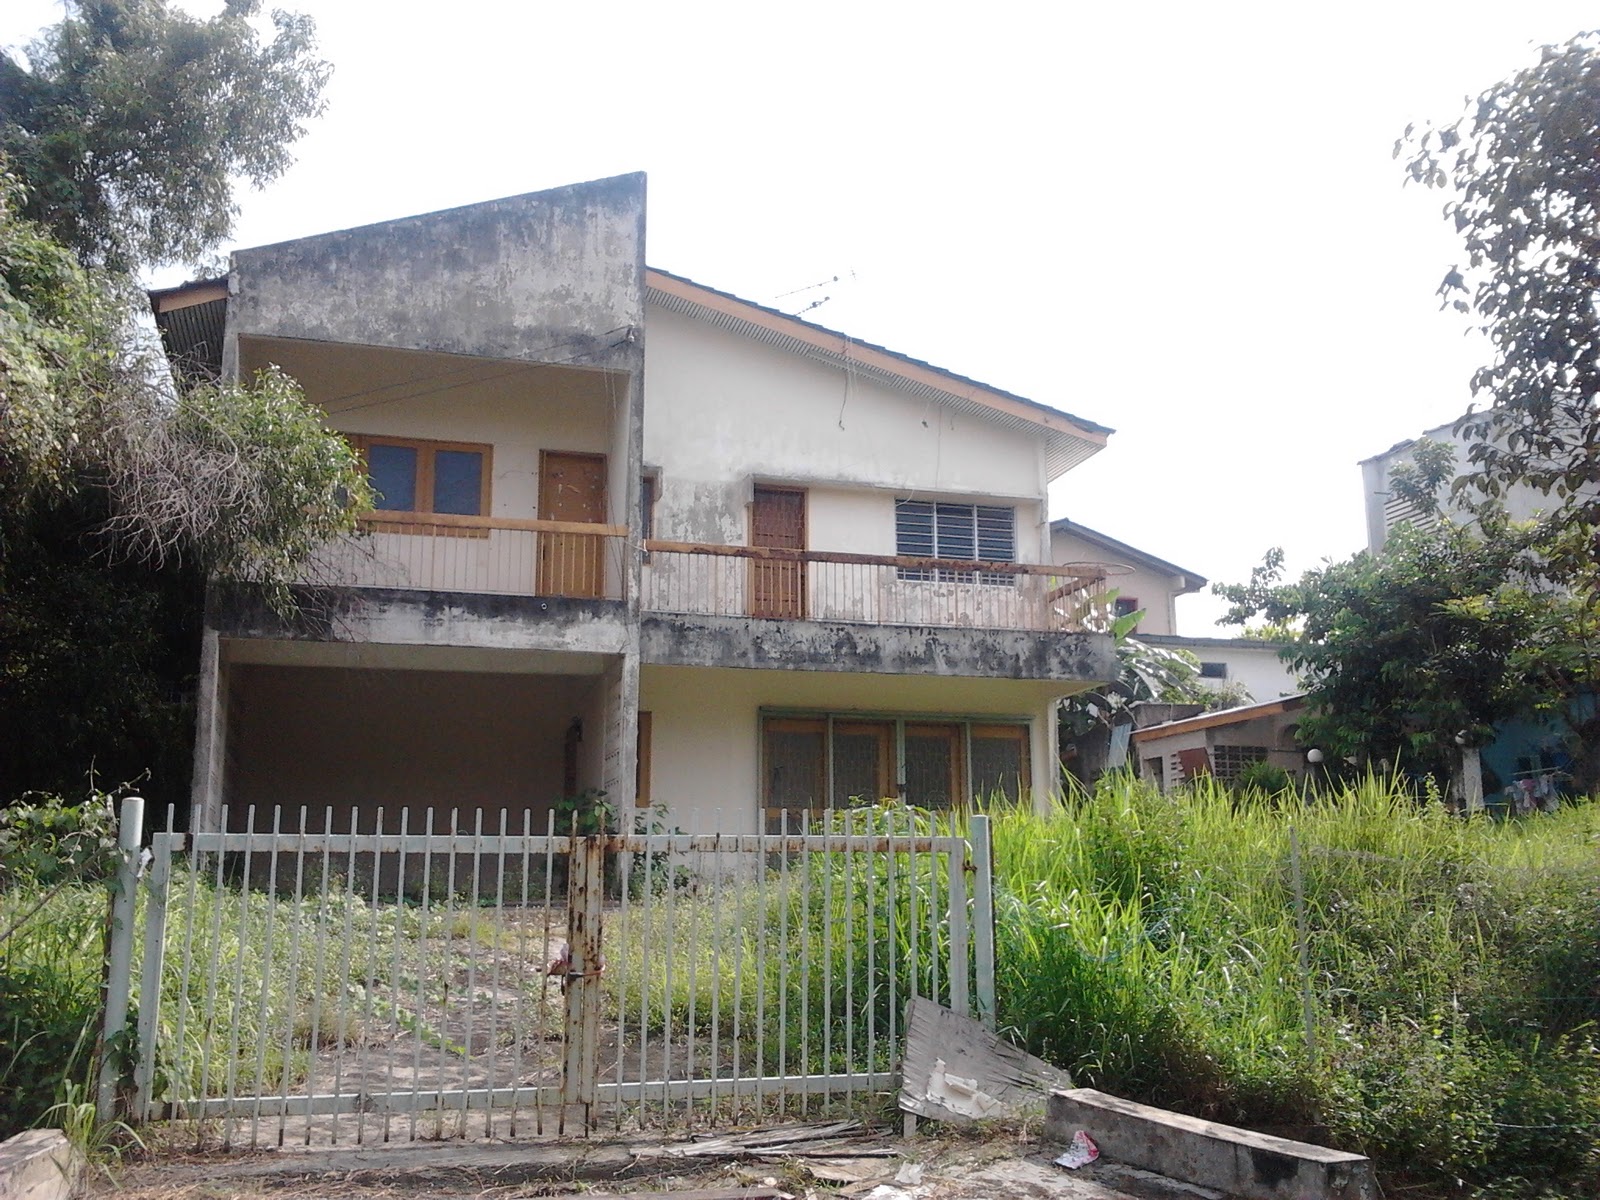 Lokasi Dan Cerita Seram: Lokasi Rumah Hantu Sekitar Shah Alam